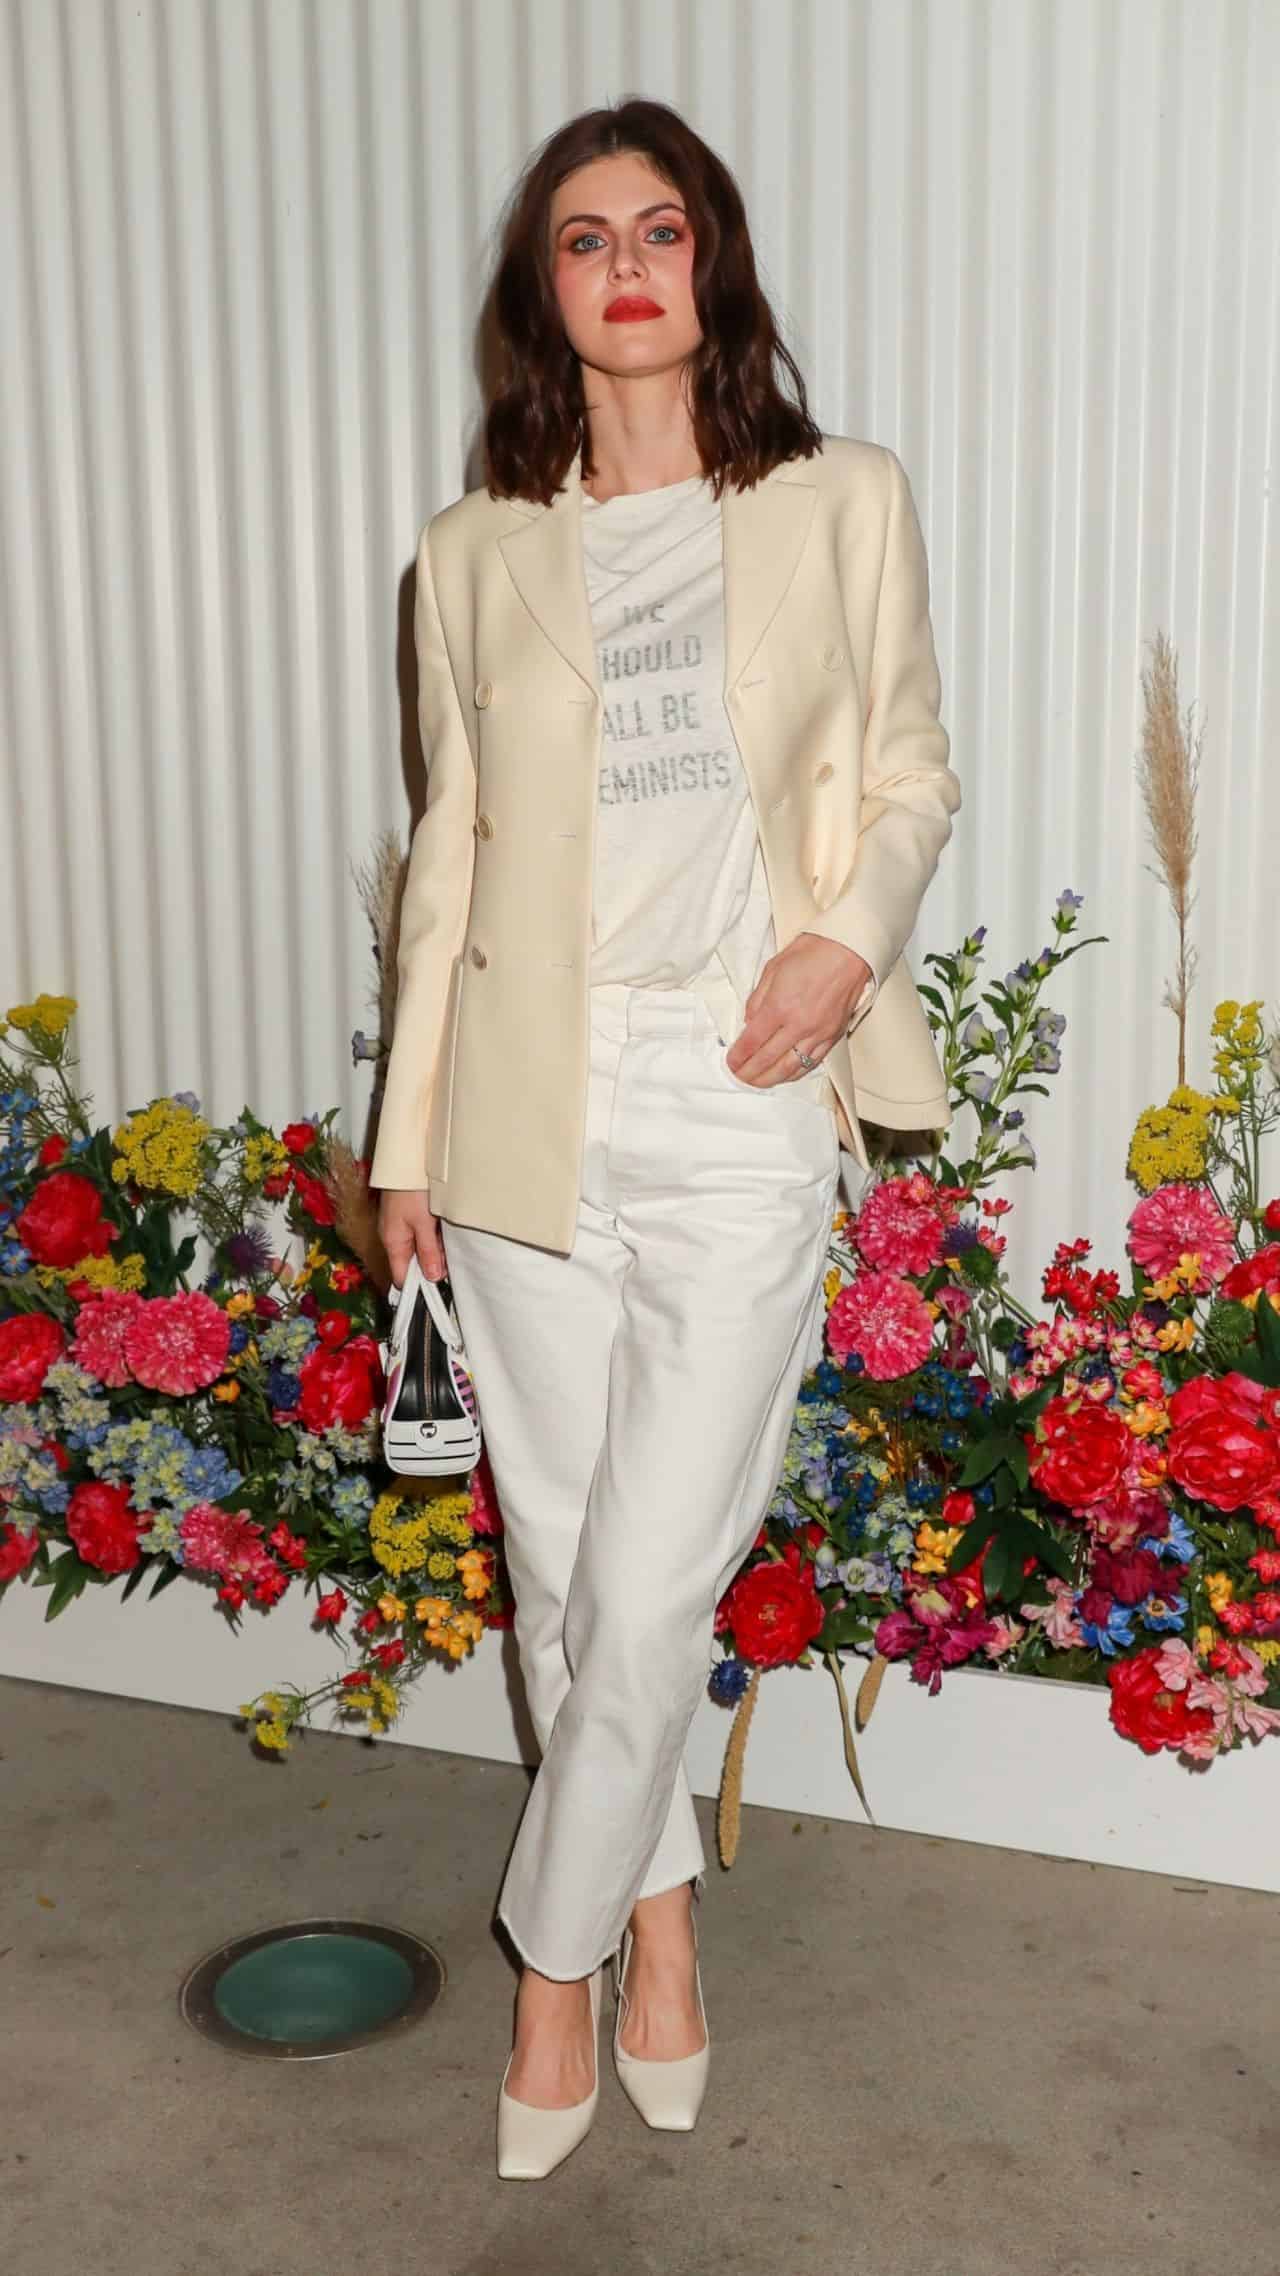 Alexandra Daddario Wowed at the Miss Dior Millefiori Garden Event in LA